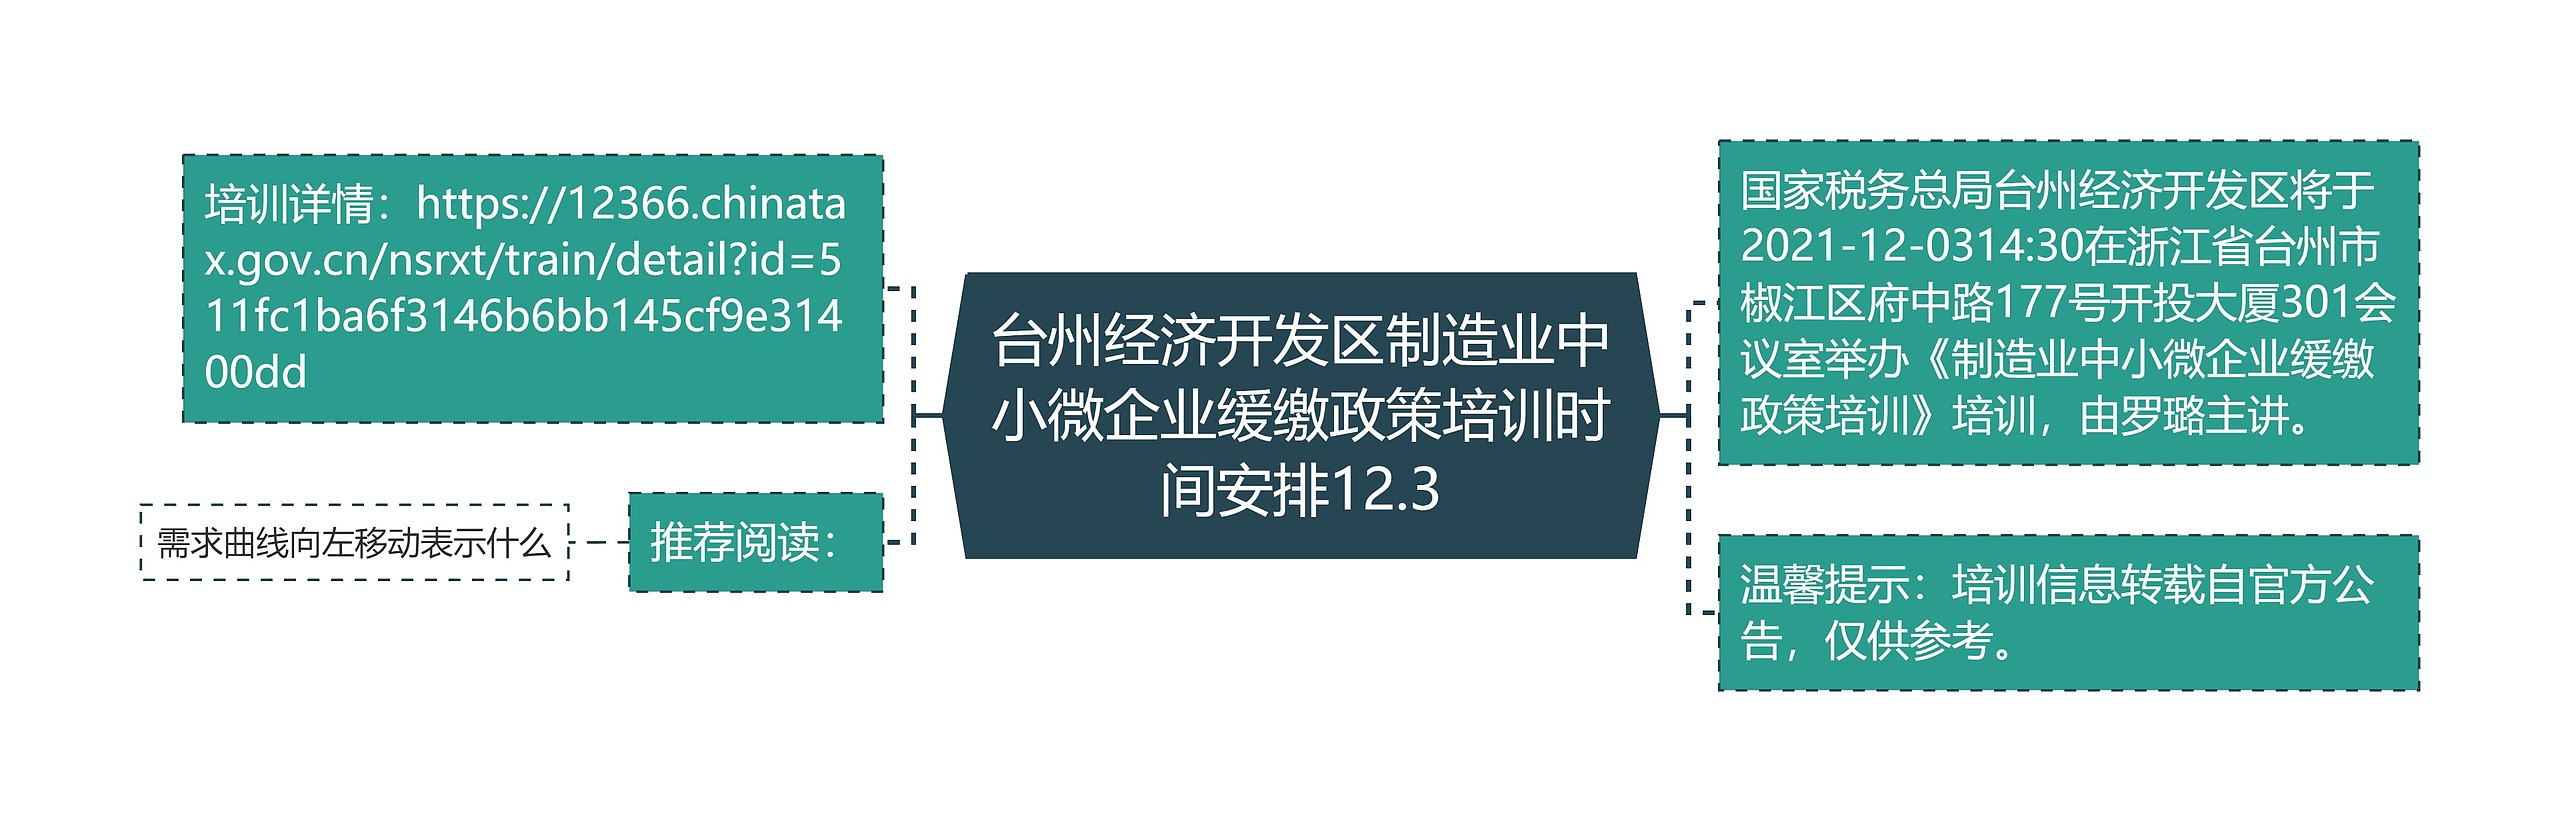 台州经济开发区制造业中小微企业缓缴政策培训时间安排12.3思维导图